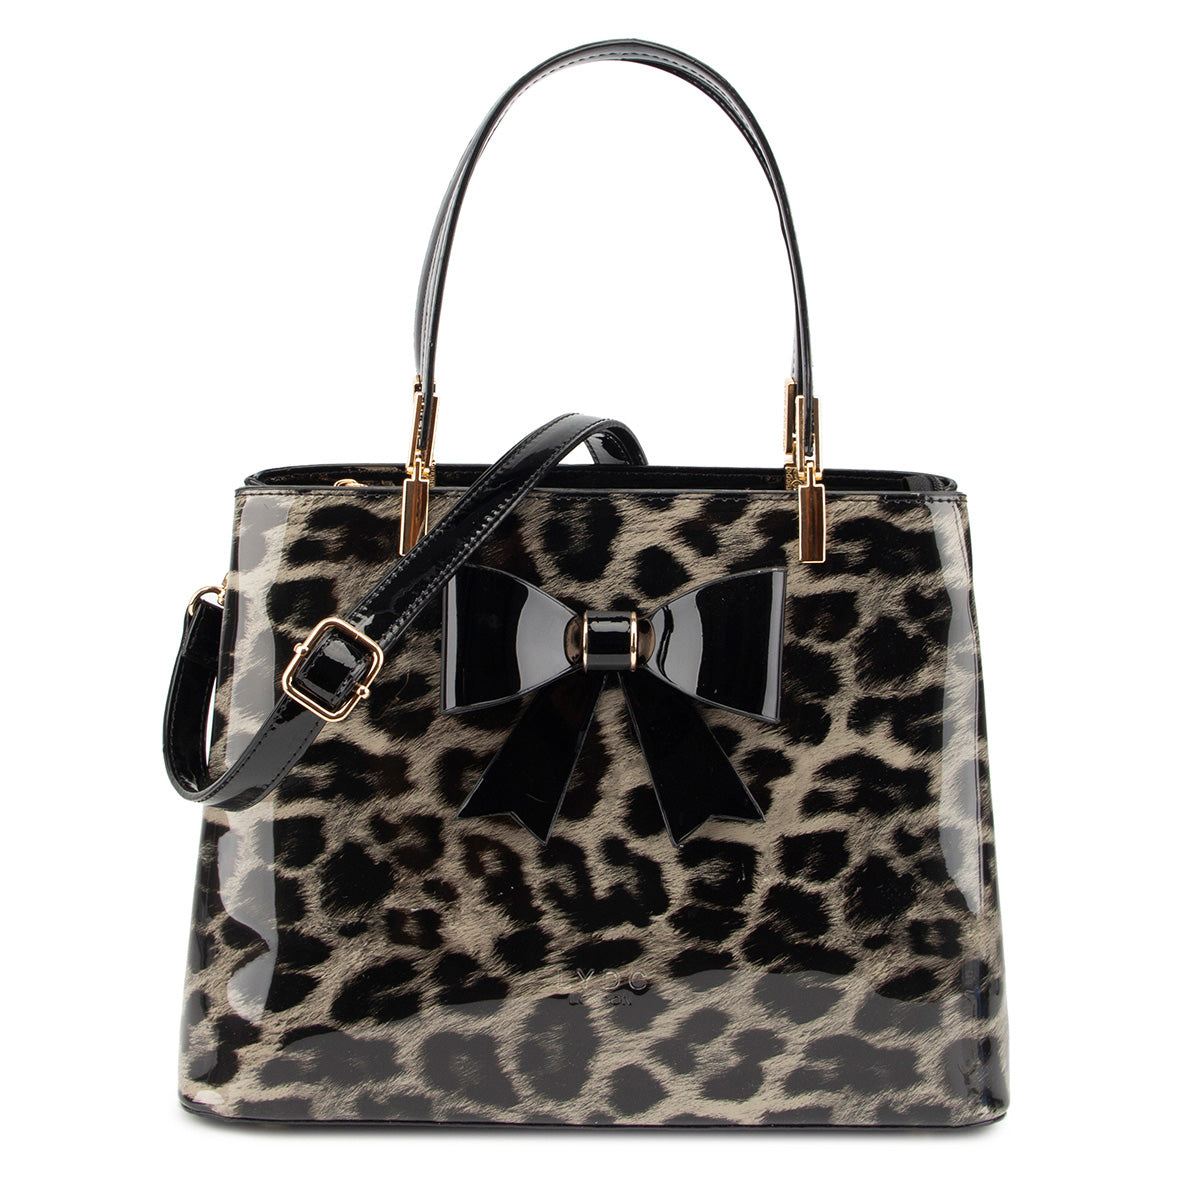 LYDC Stylish Leopard Pattern Handbag